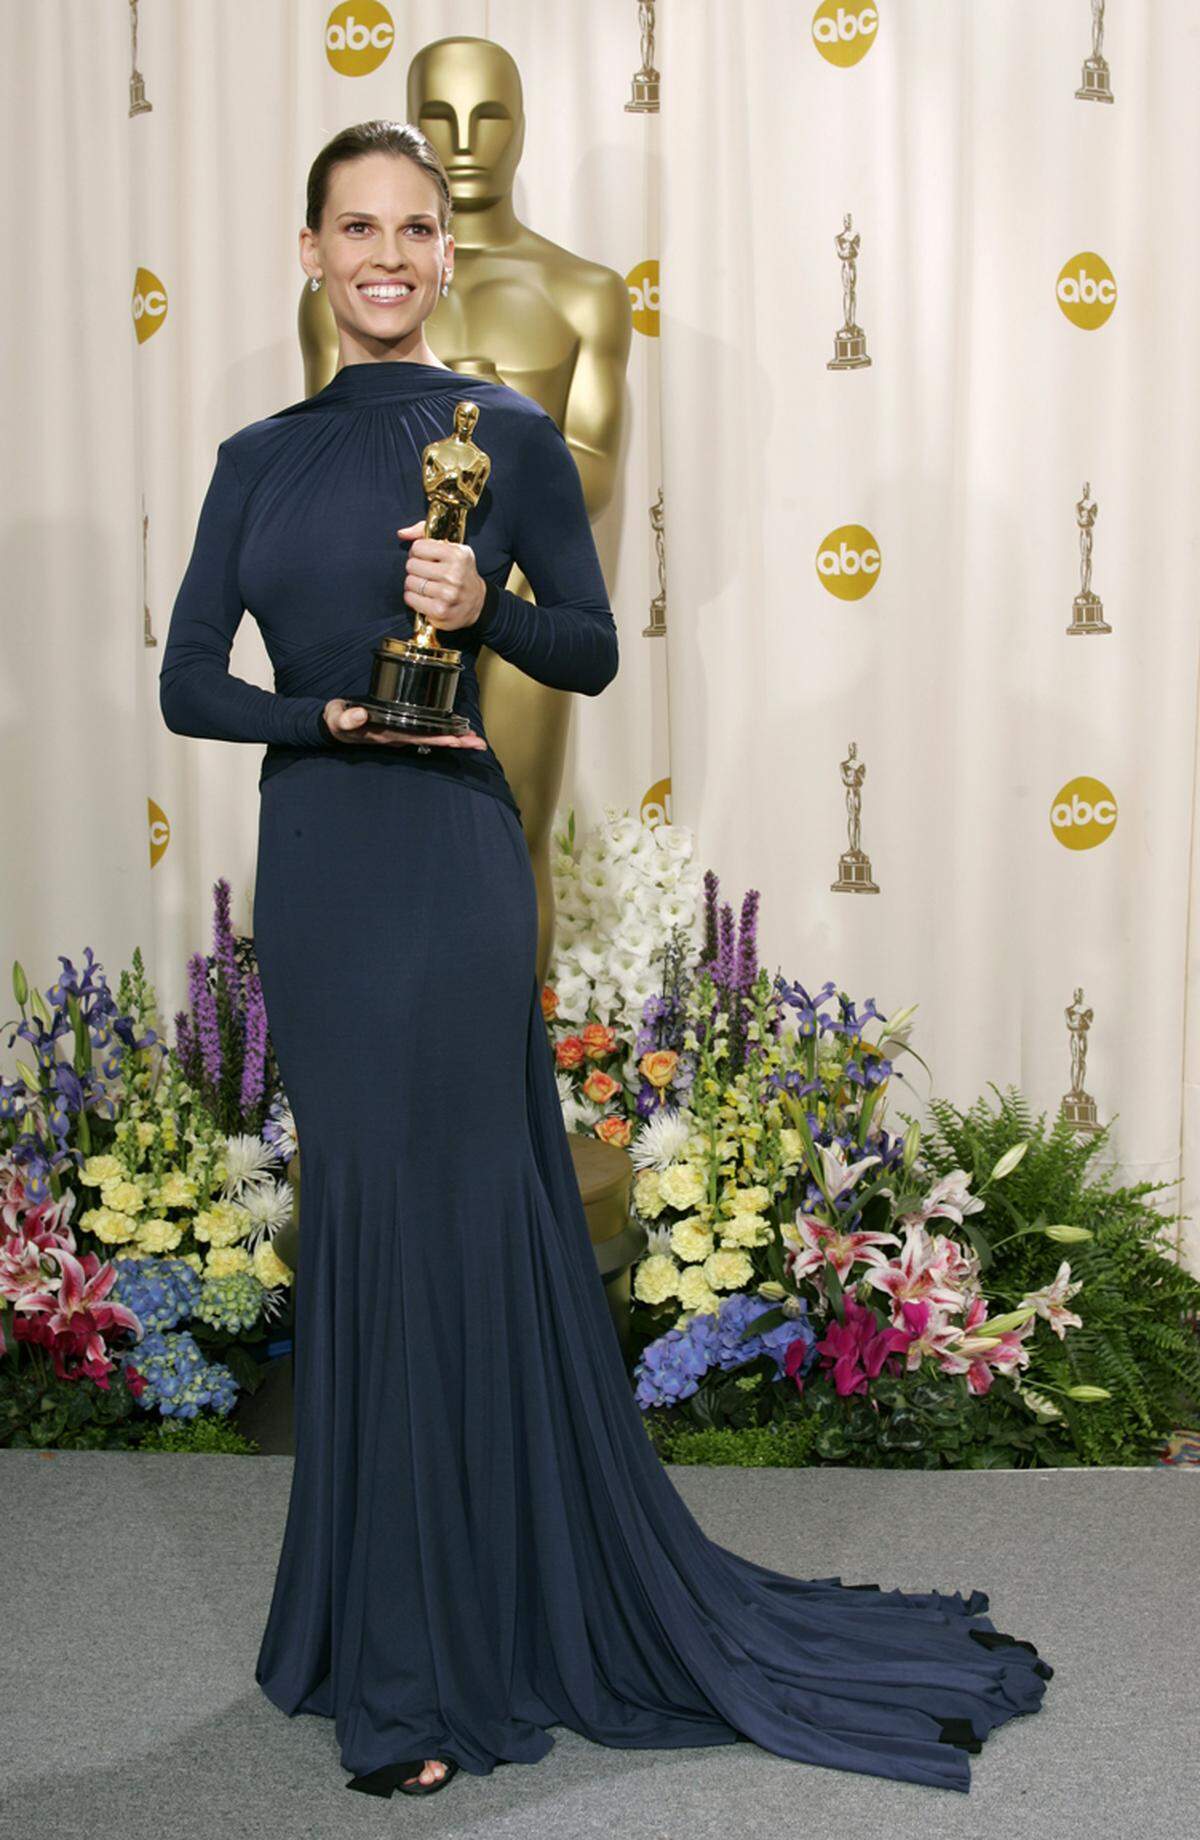 Hilary Swank gewann 2005 den Oscar für ihre Rolle in "Million Dollar Baby". Sie trug ein Kleid von Guy Laroche.